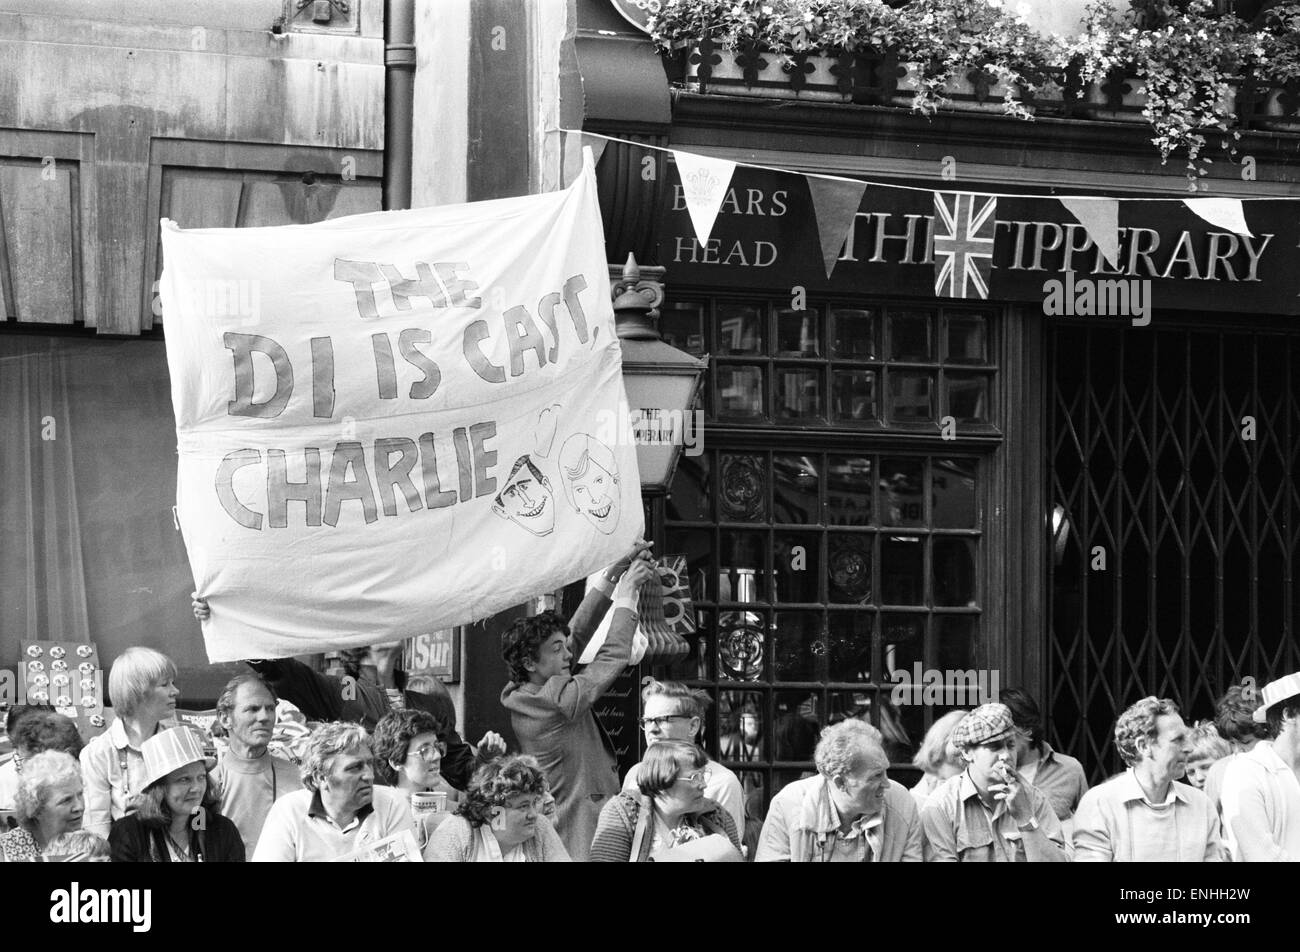 Hochzeit von Prinz Charles & Lady Diana Spencer, 29. Juli 1981. Im Bild: Menge von Gönnern, mit Banner "The Di ist Darsteller Charlie", vor der Tipparary Pub in London. Stockfoto